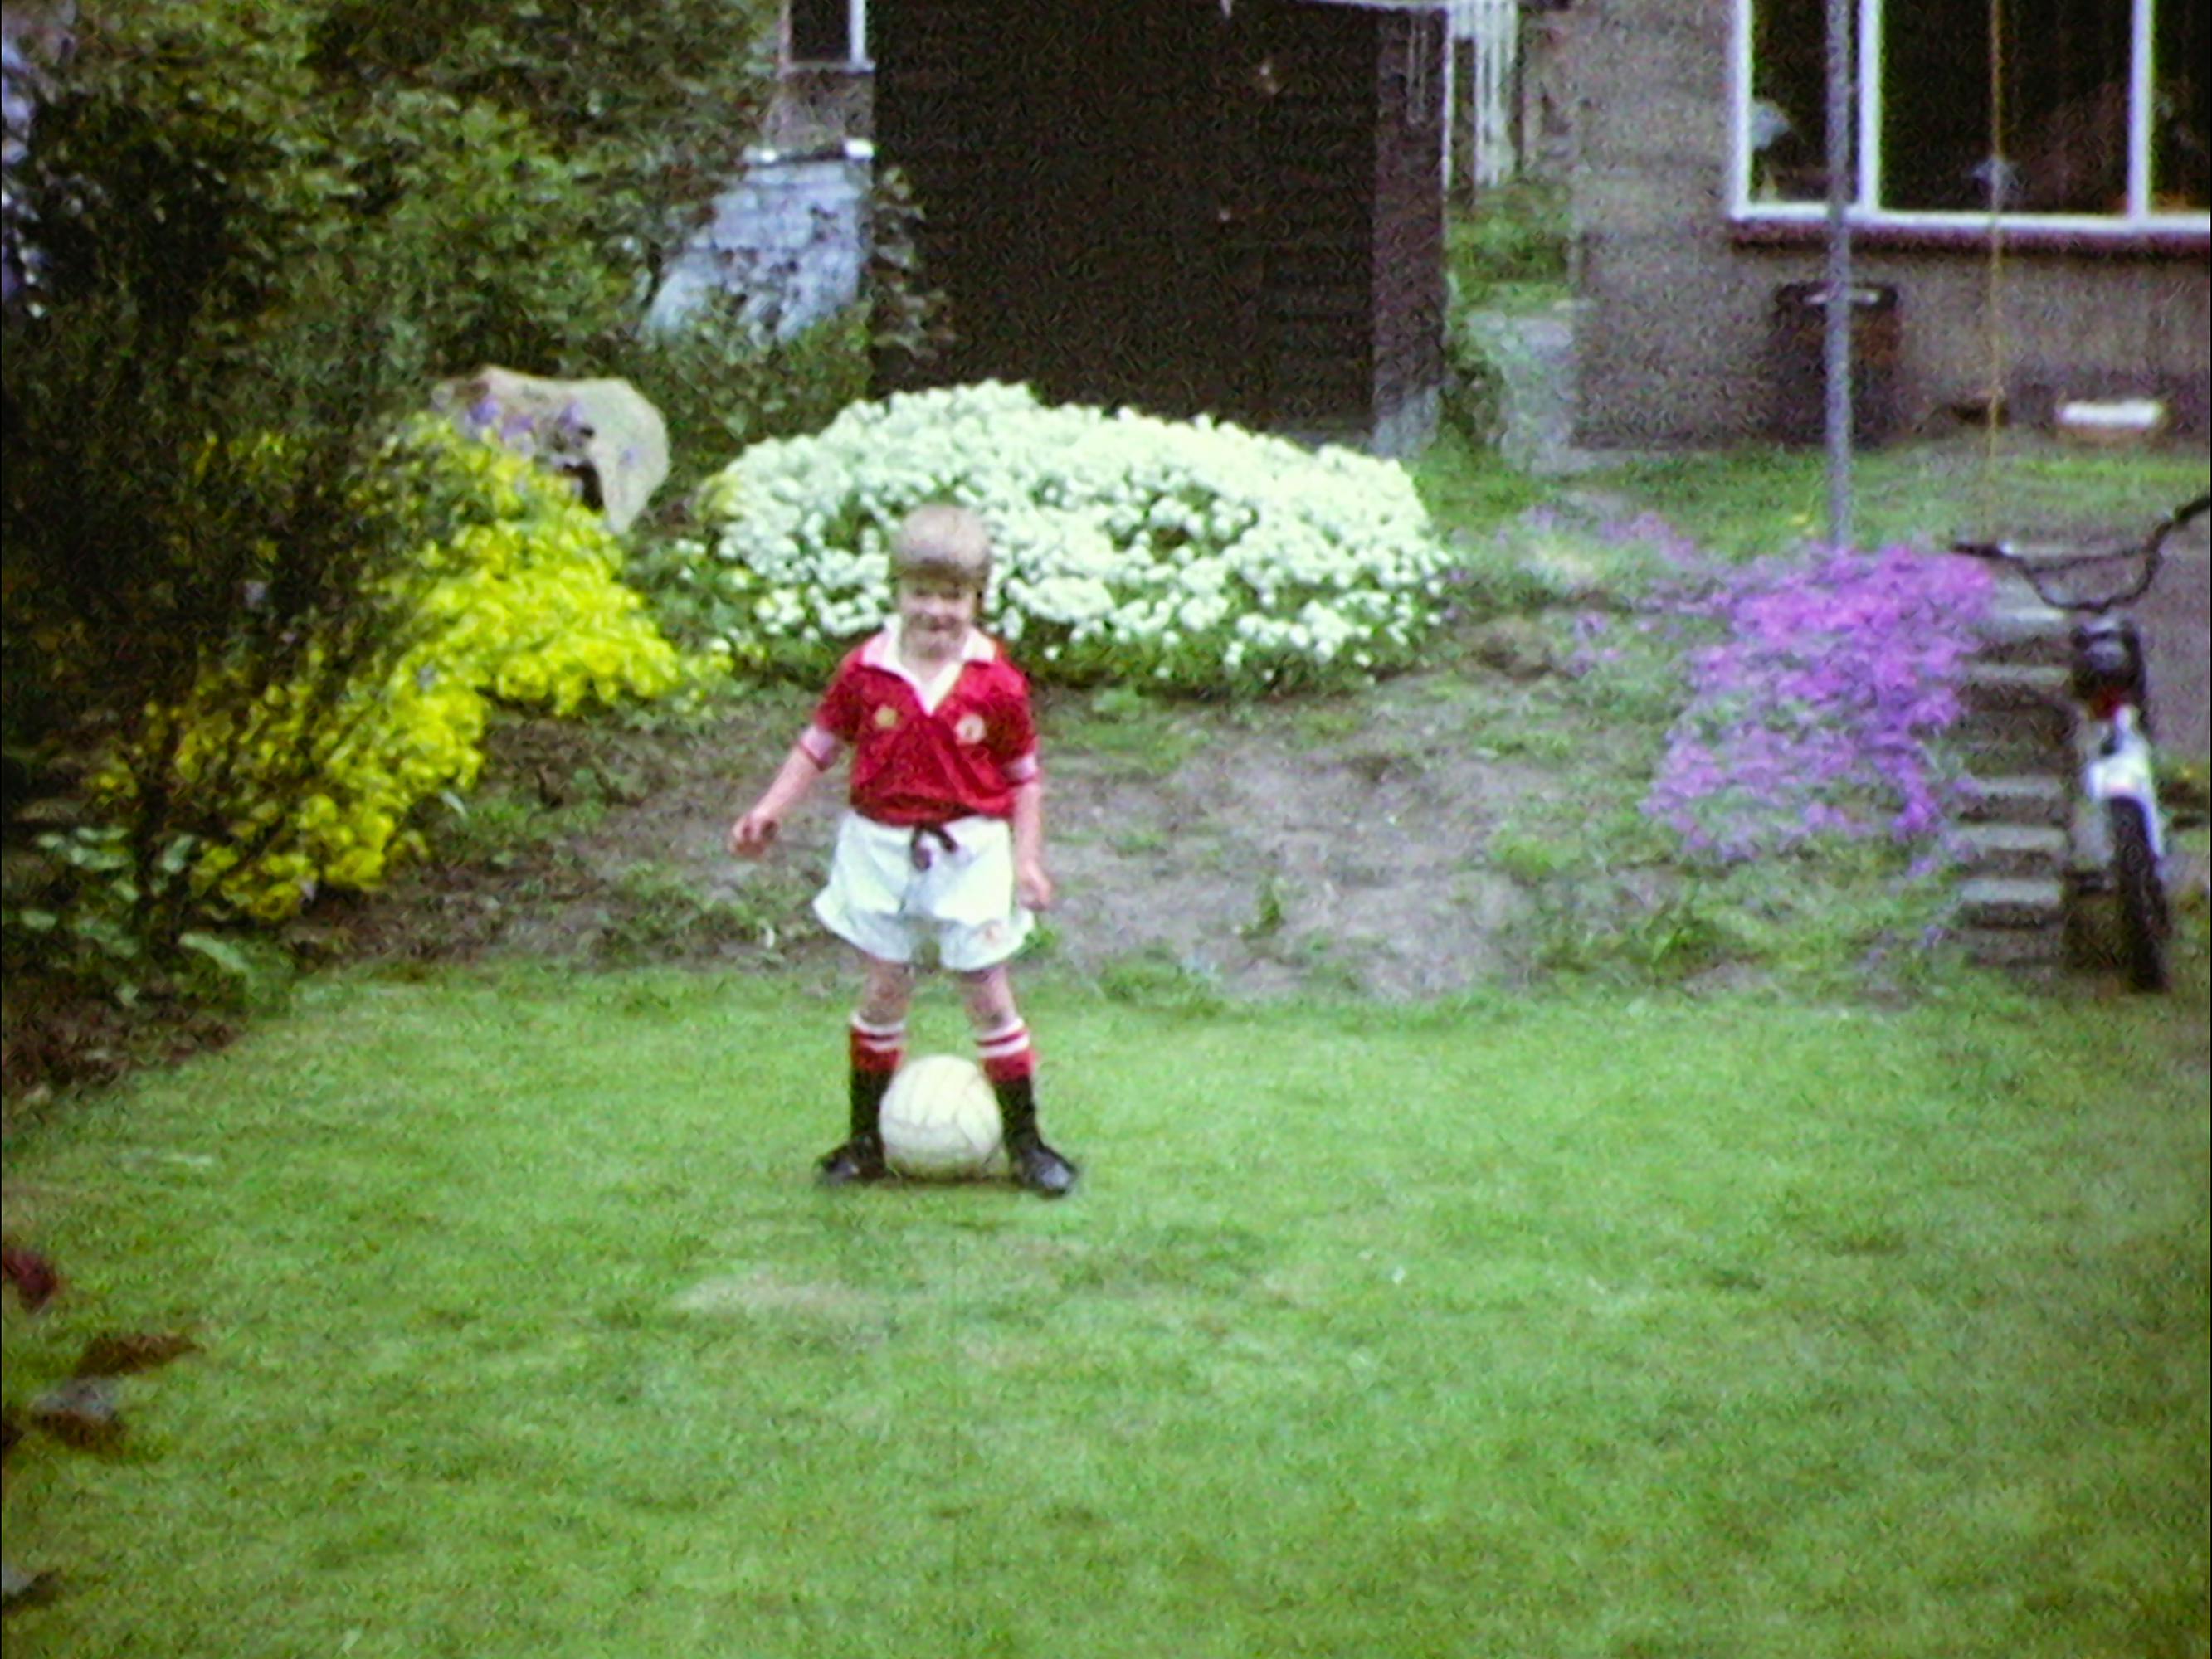 A young David Beckham kicks a ball around a grassy backyard.